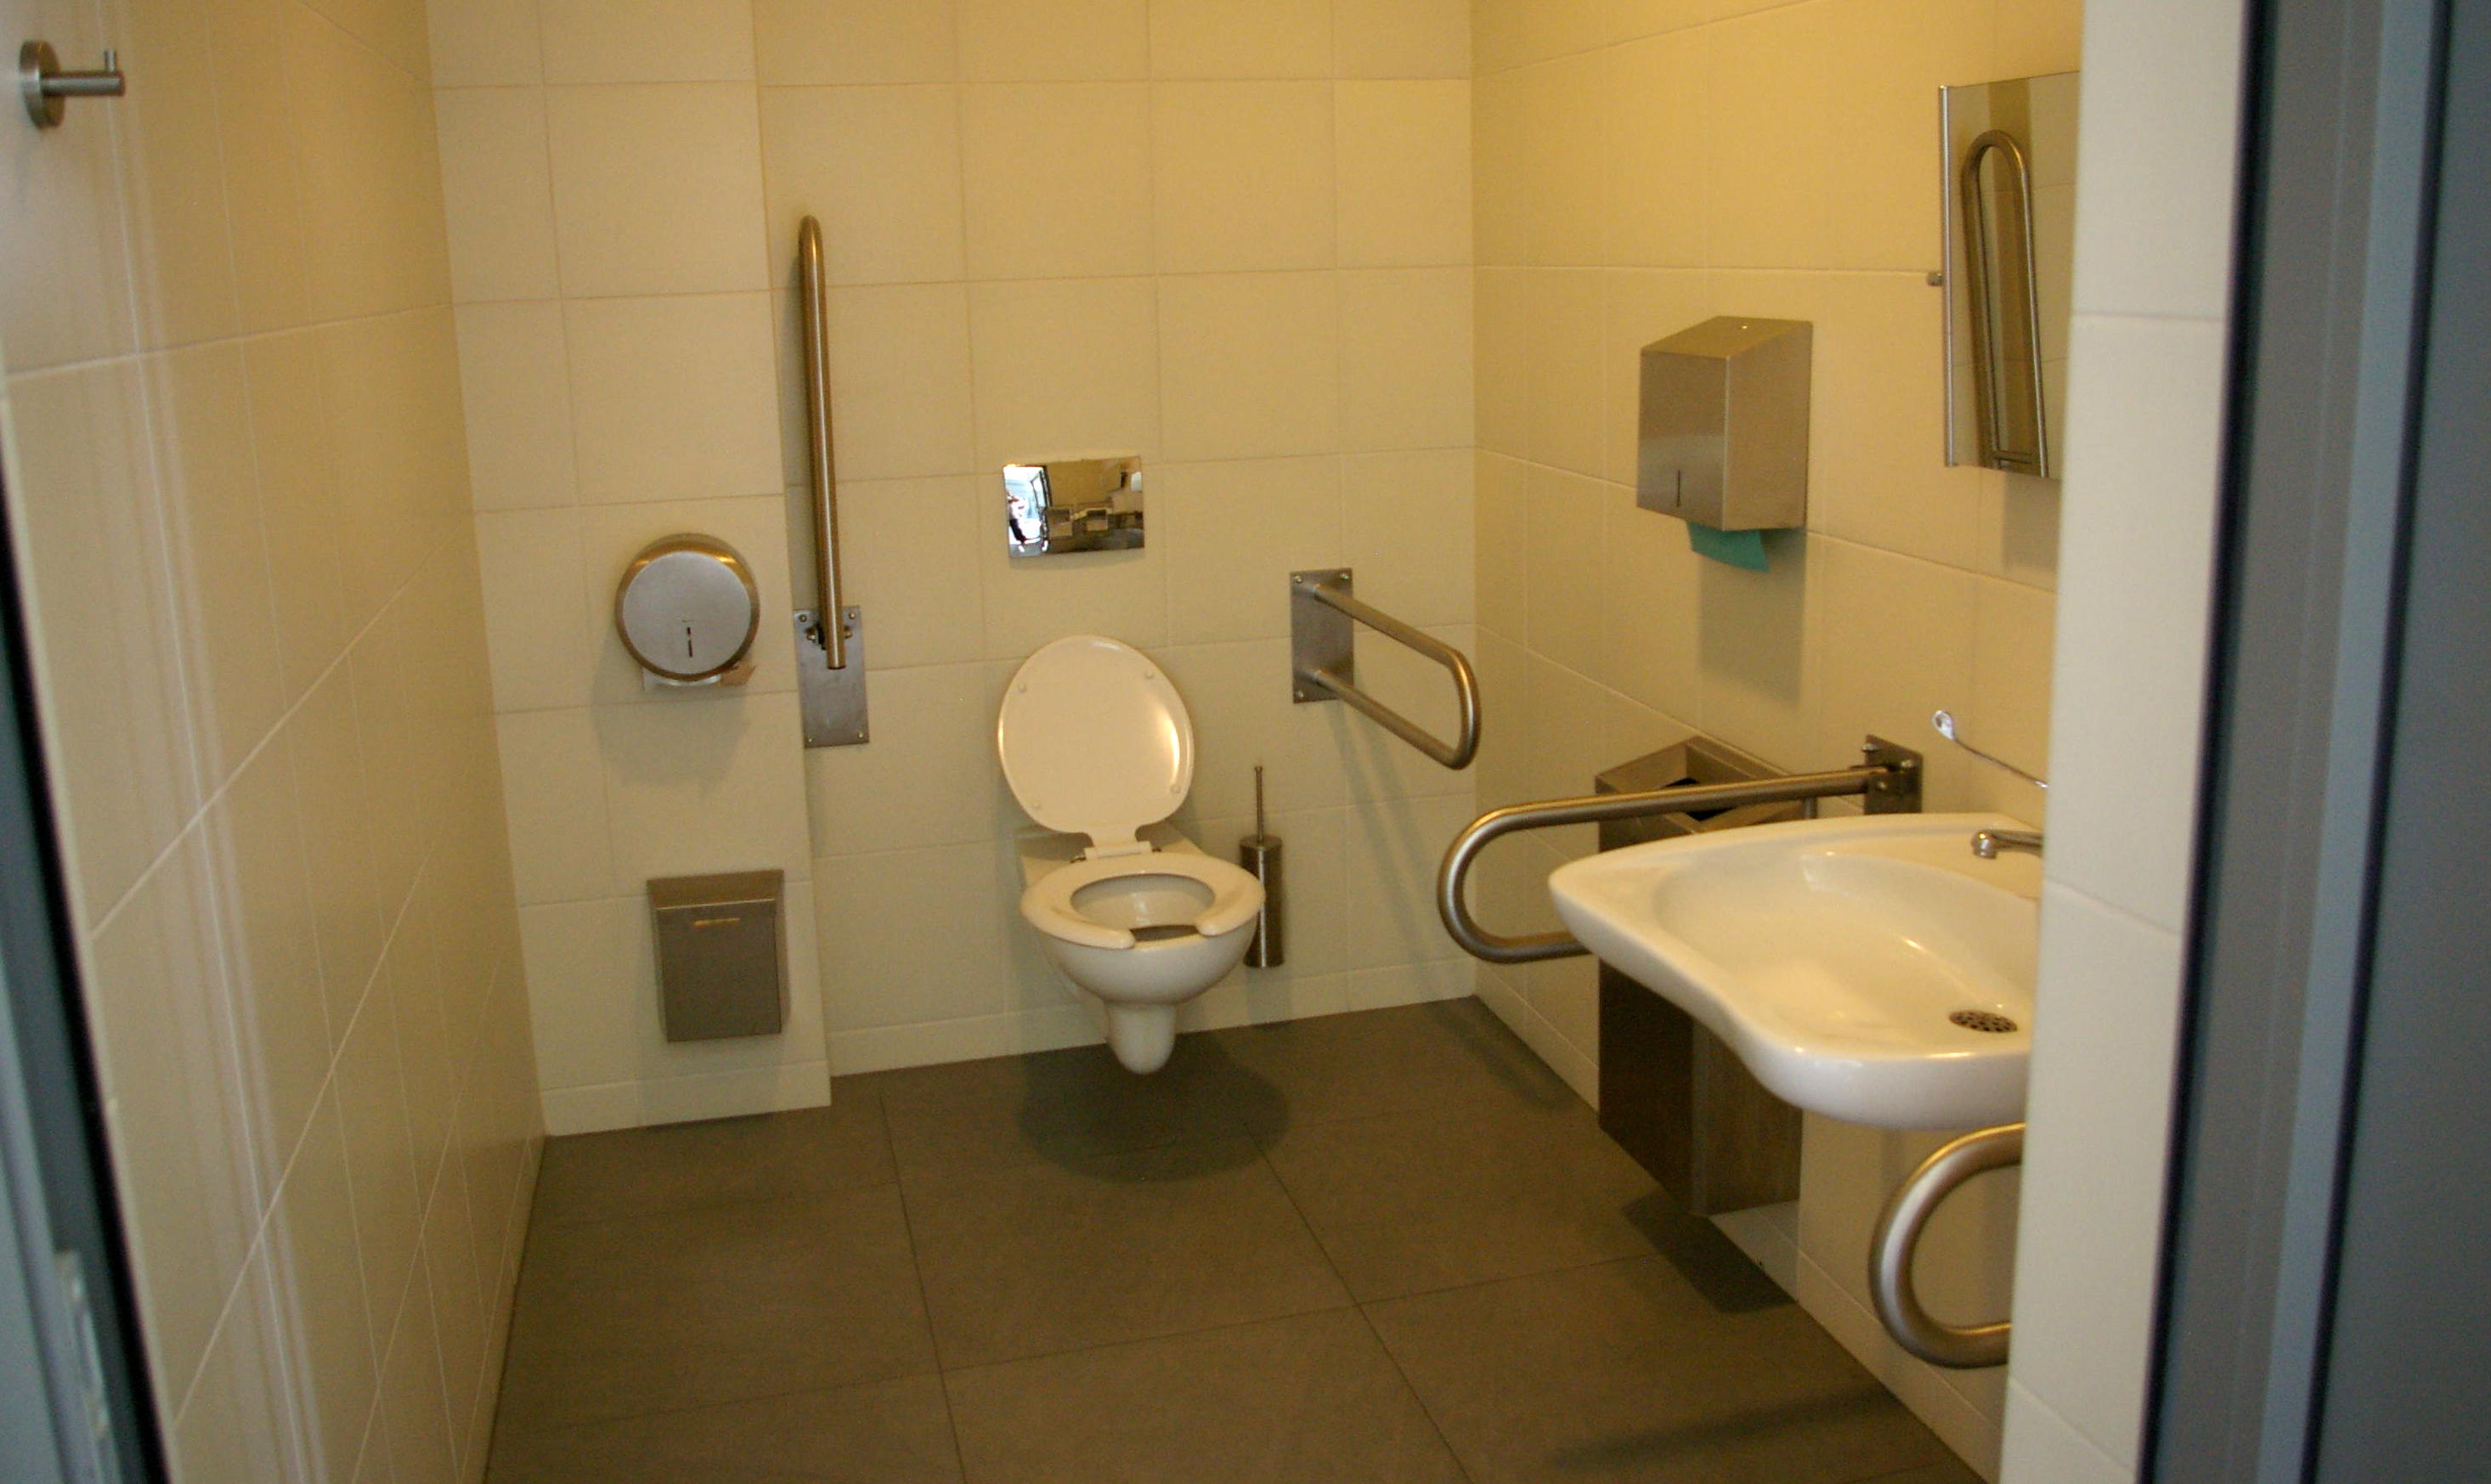 Toaleta dla osób niepełnosprawnych w budynku Galerii Sztuki Współczesnej ELEKTROWNIA w Czeladzi.